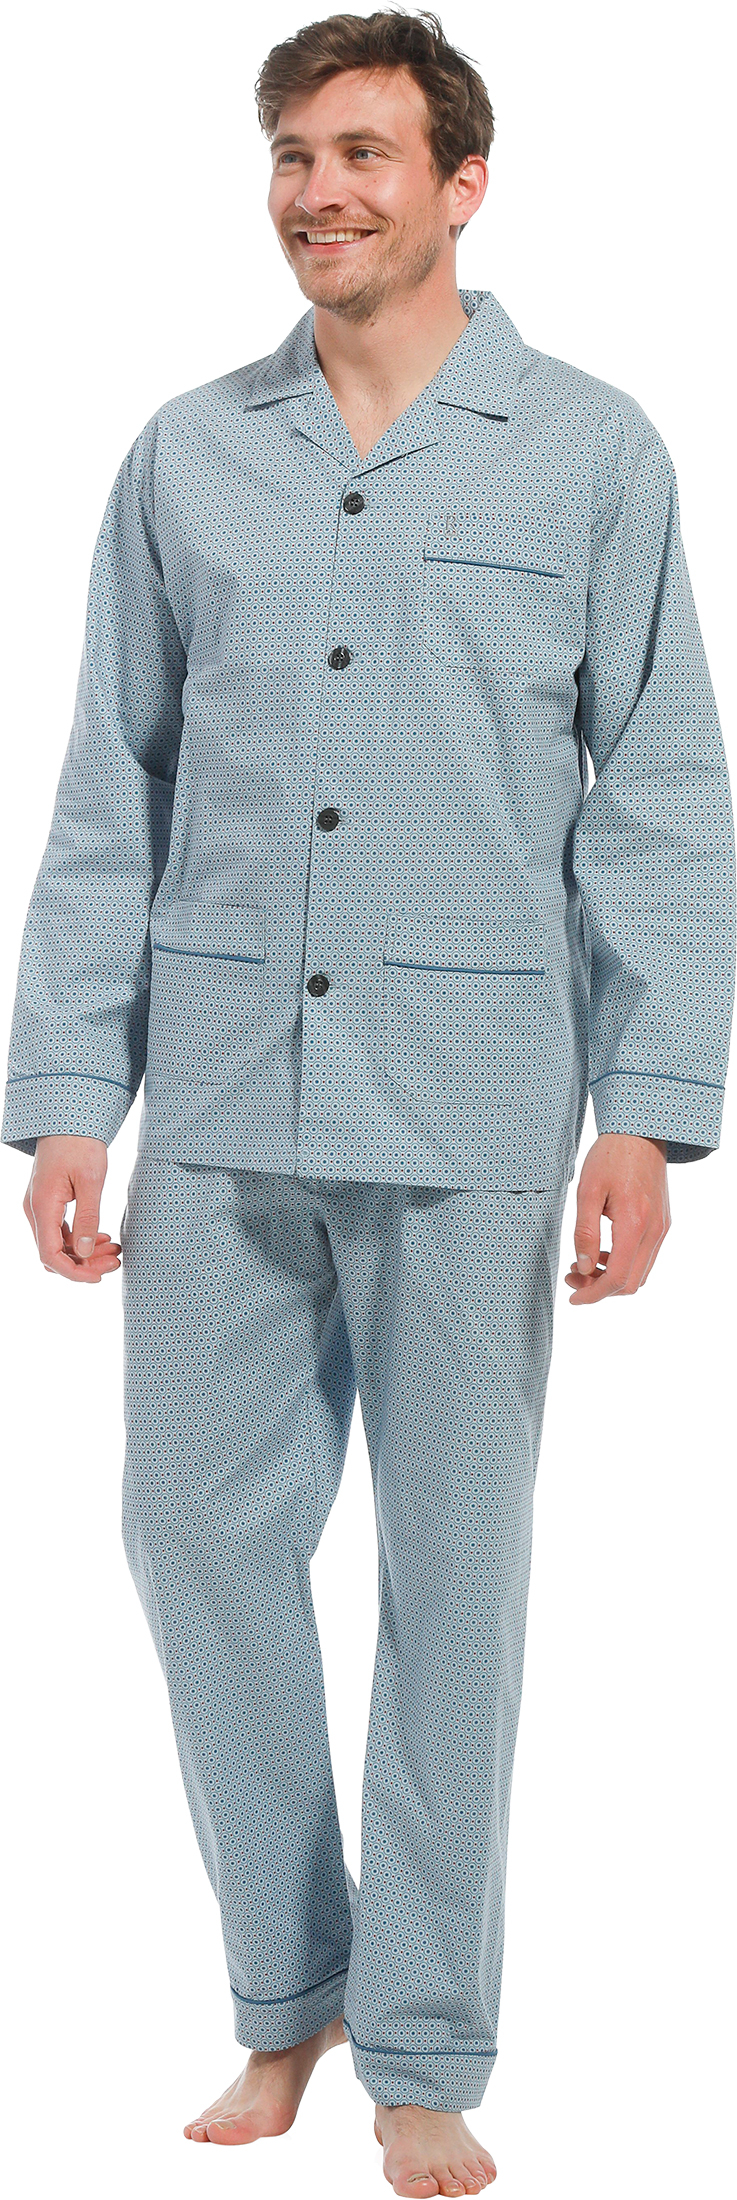 Robson heren pyjama doorknoop 27221-700-6 - Blauw - L/52